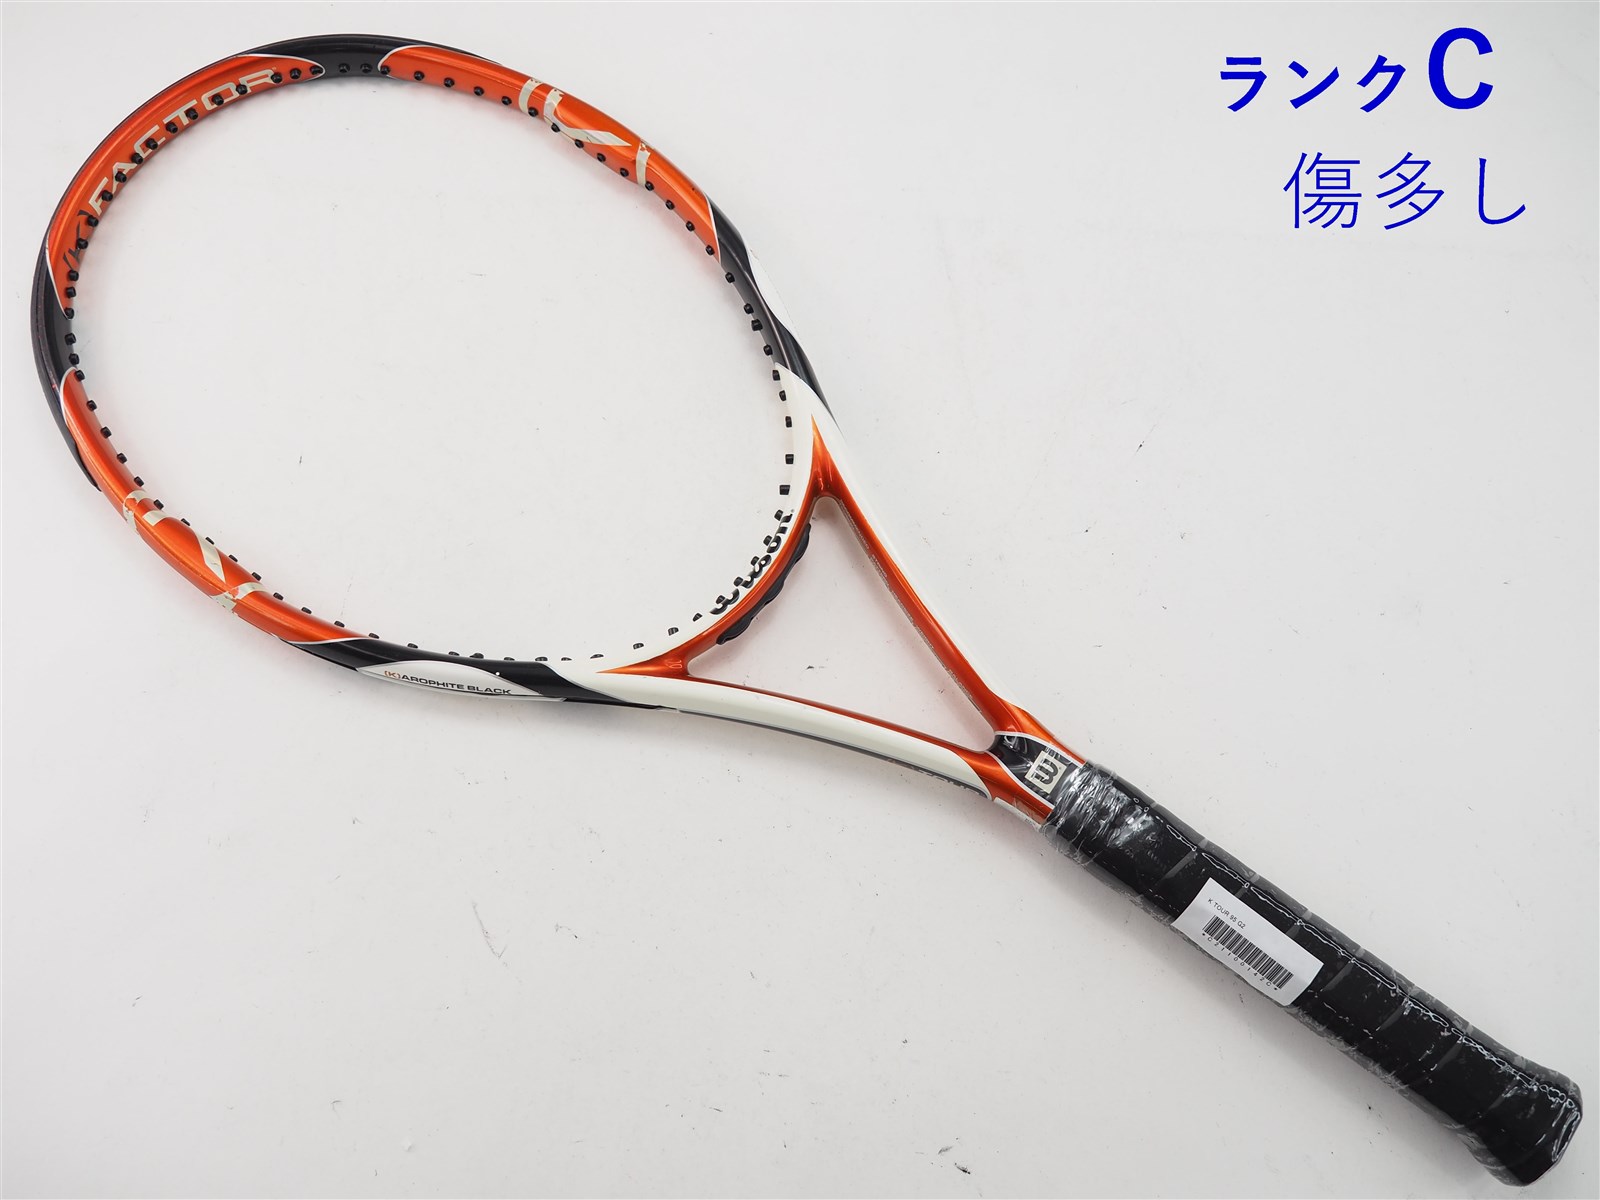 テニスラケット ウィルソン K ワン 122 2007年モデル (G2)WILSON K ONE 122 2007